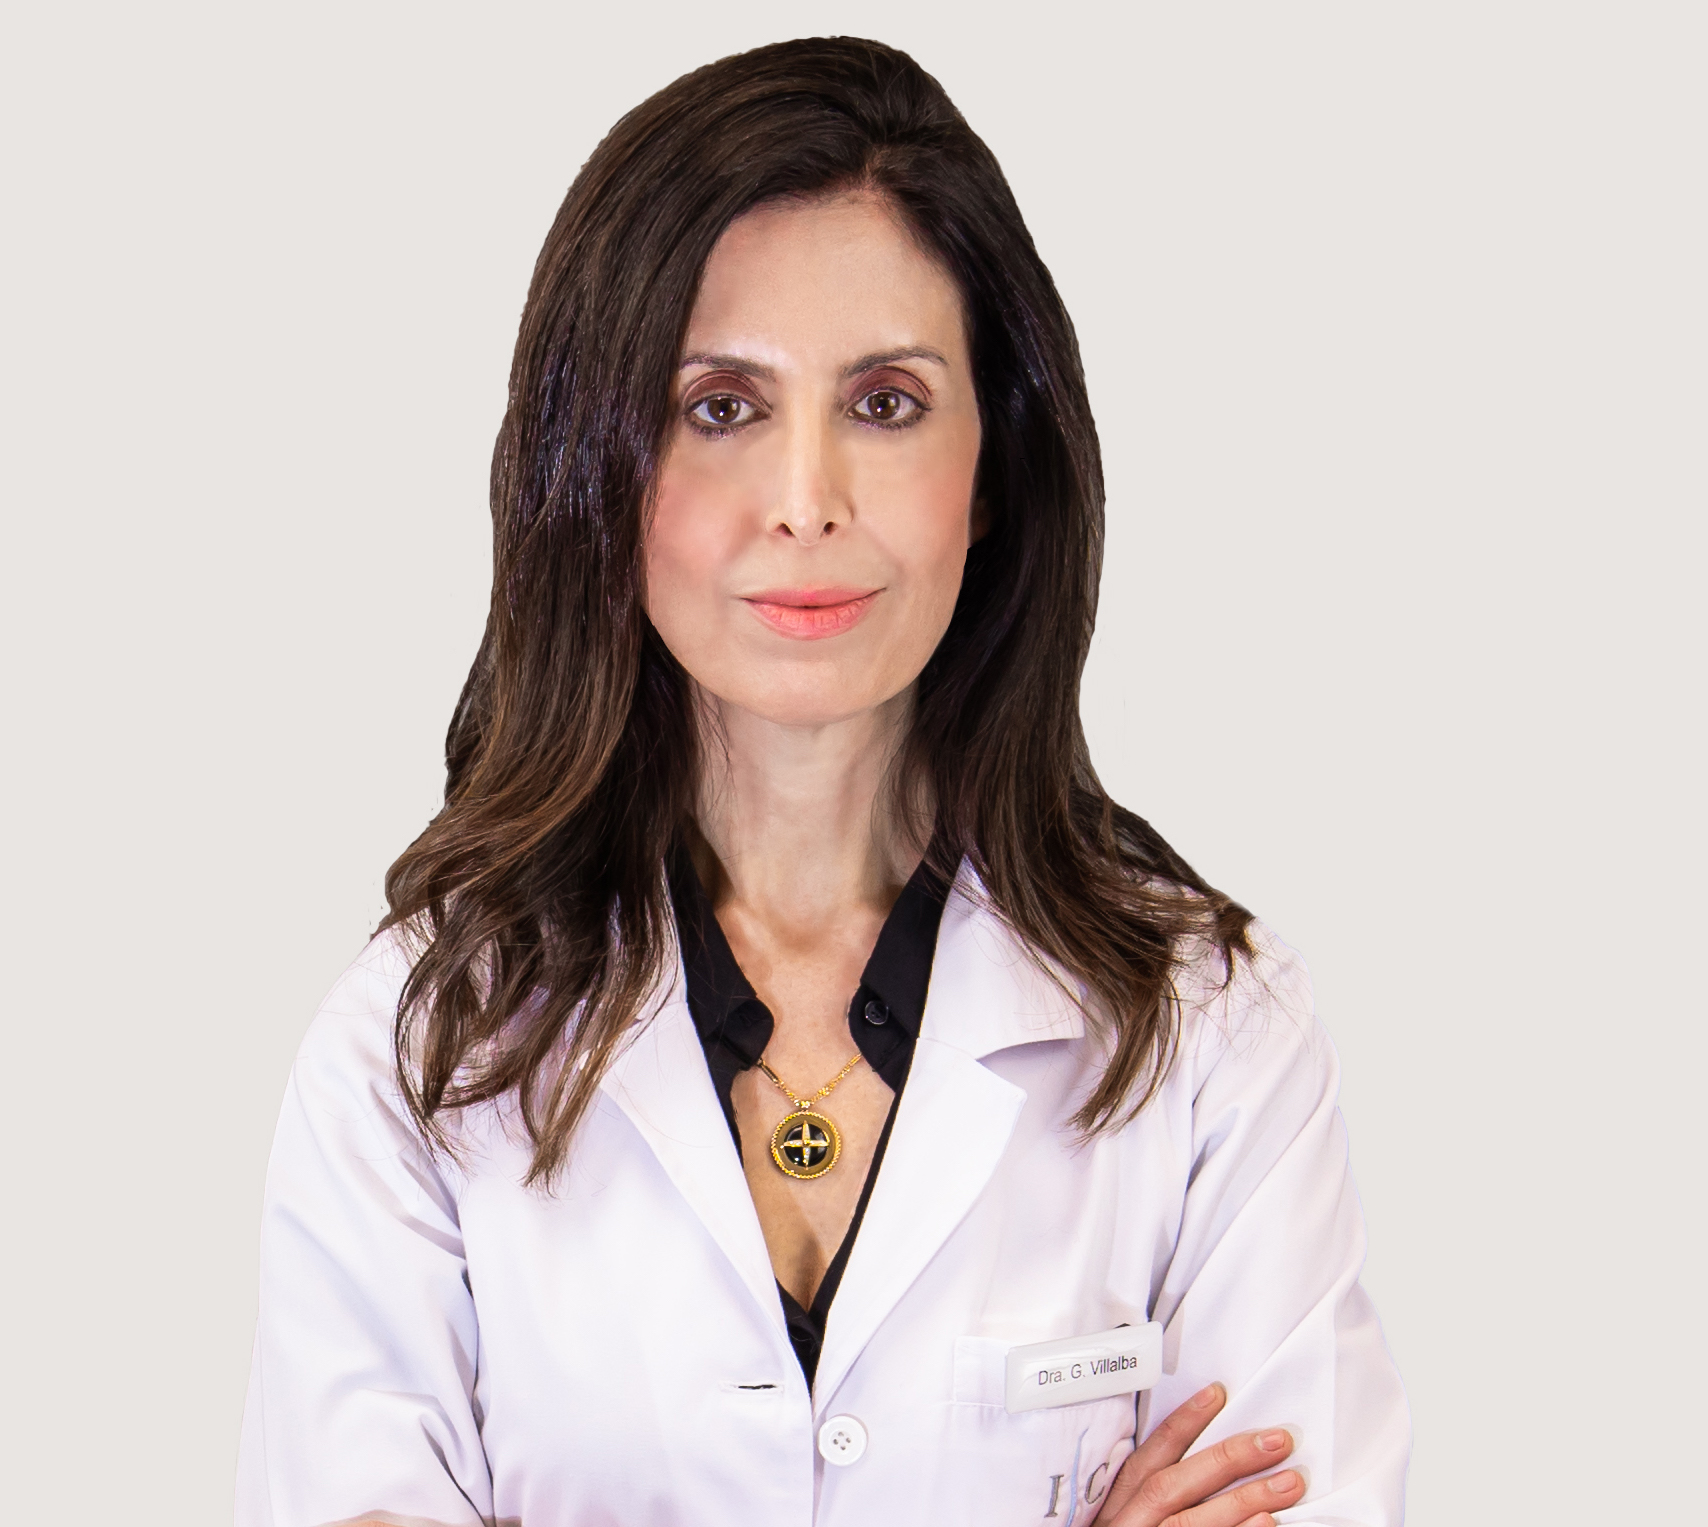 Dra. Gloria Villalba Martínez